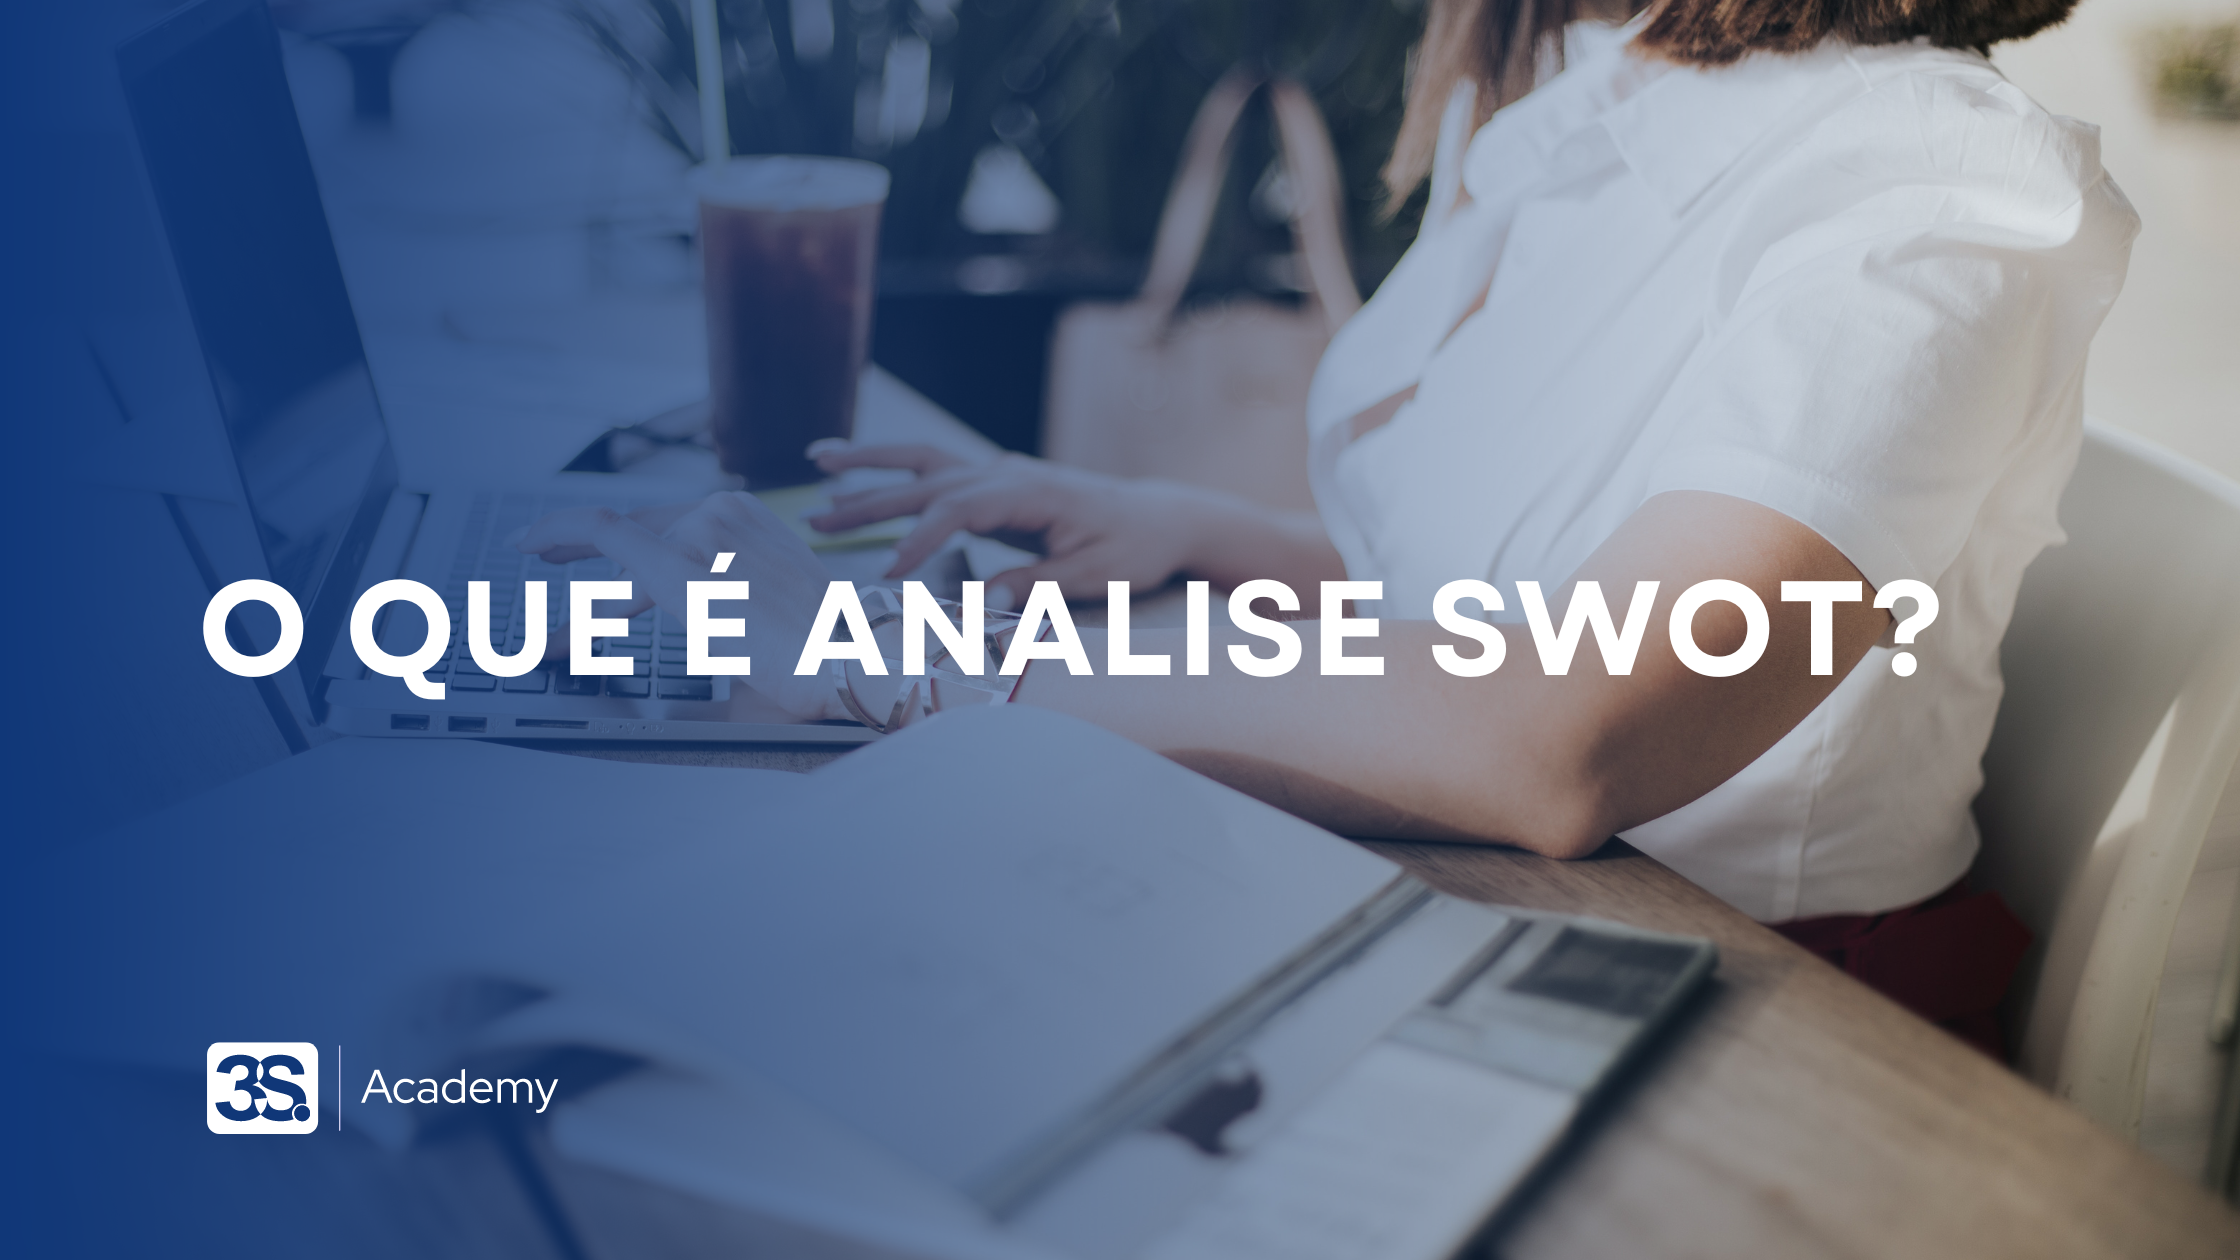 O que é analise SWOT?